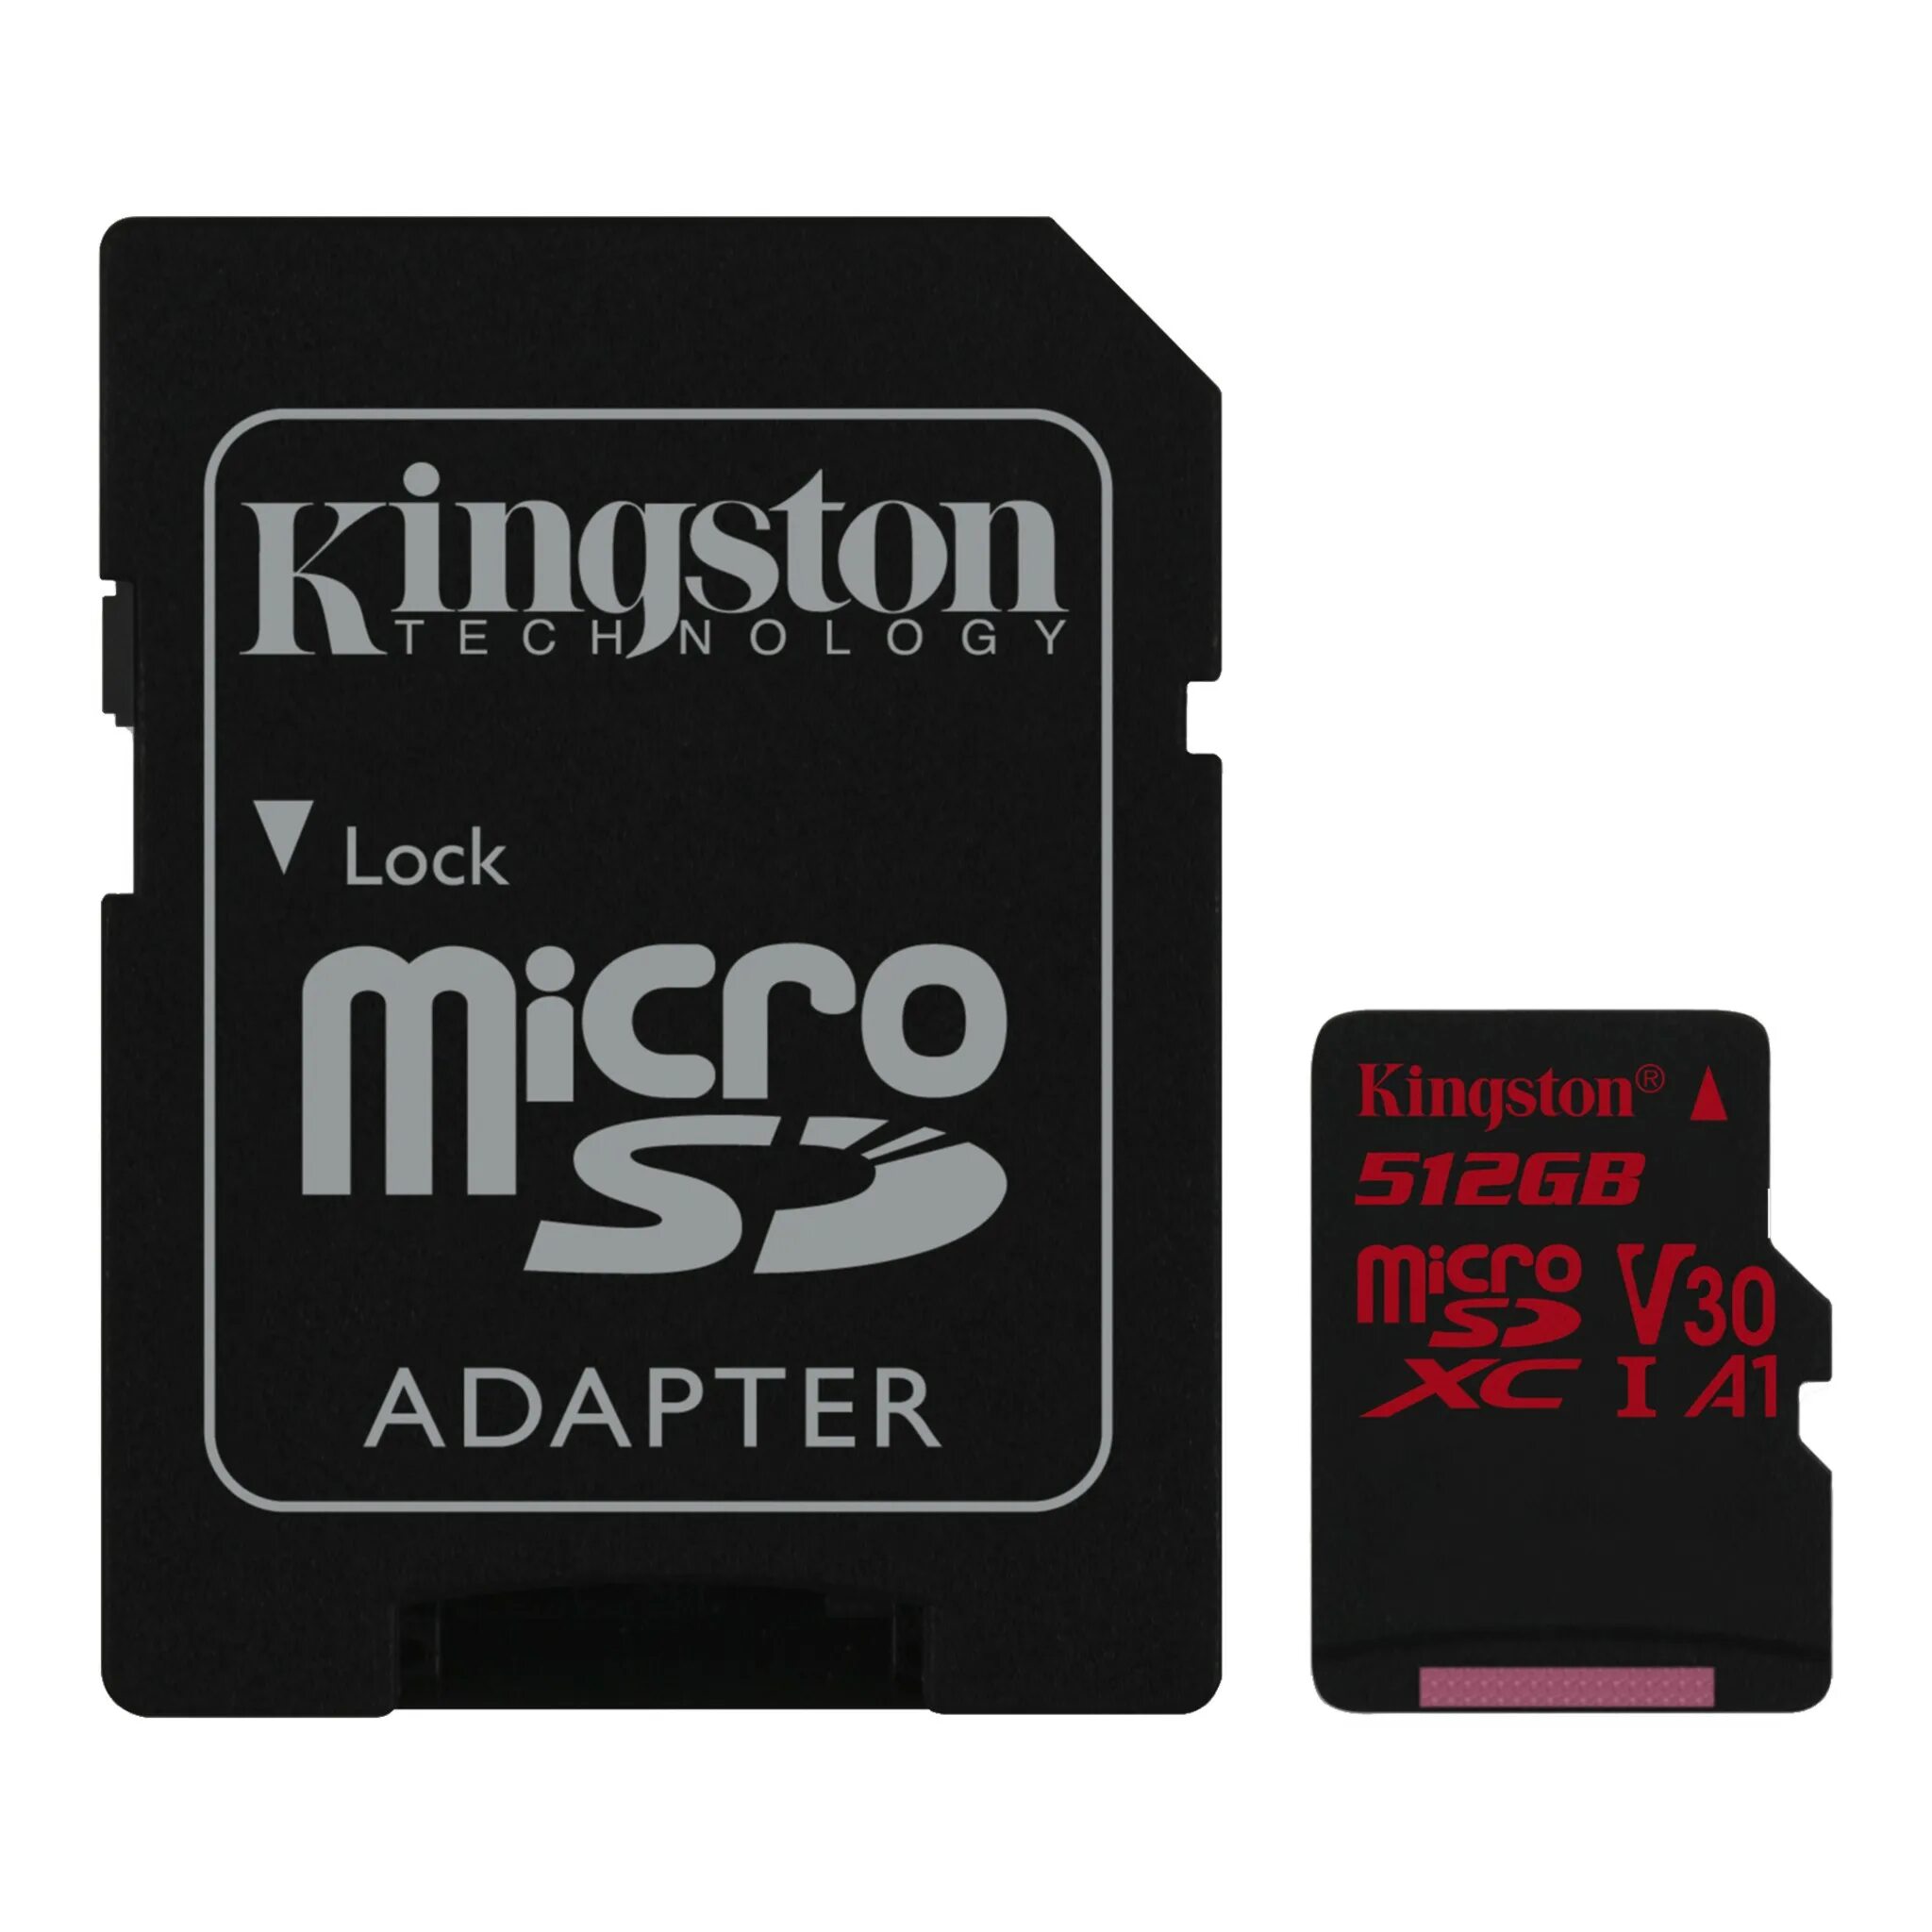 Адаптер microsdhc. Карта памяти MICROSD 256gb Kingston. Карта памяти MICROSDXC 128 GB Kingston Canvas select Plus UHS-I u1. Карта памяти MICROSD 64gb Kingston class 10 Canvas select Plus a1 100 MB/S SD адаптер. MICROSD Kingston 128gb Canvas select.